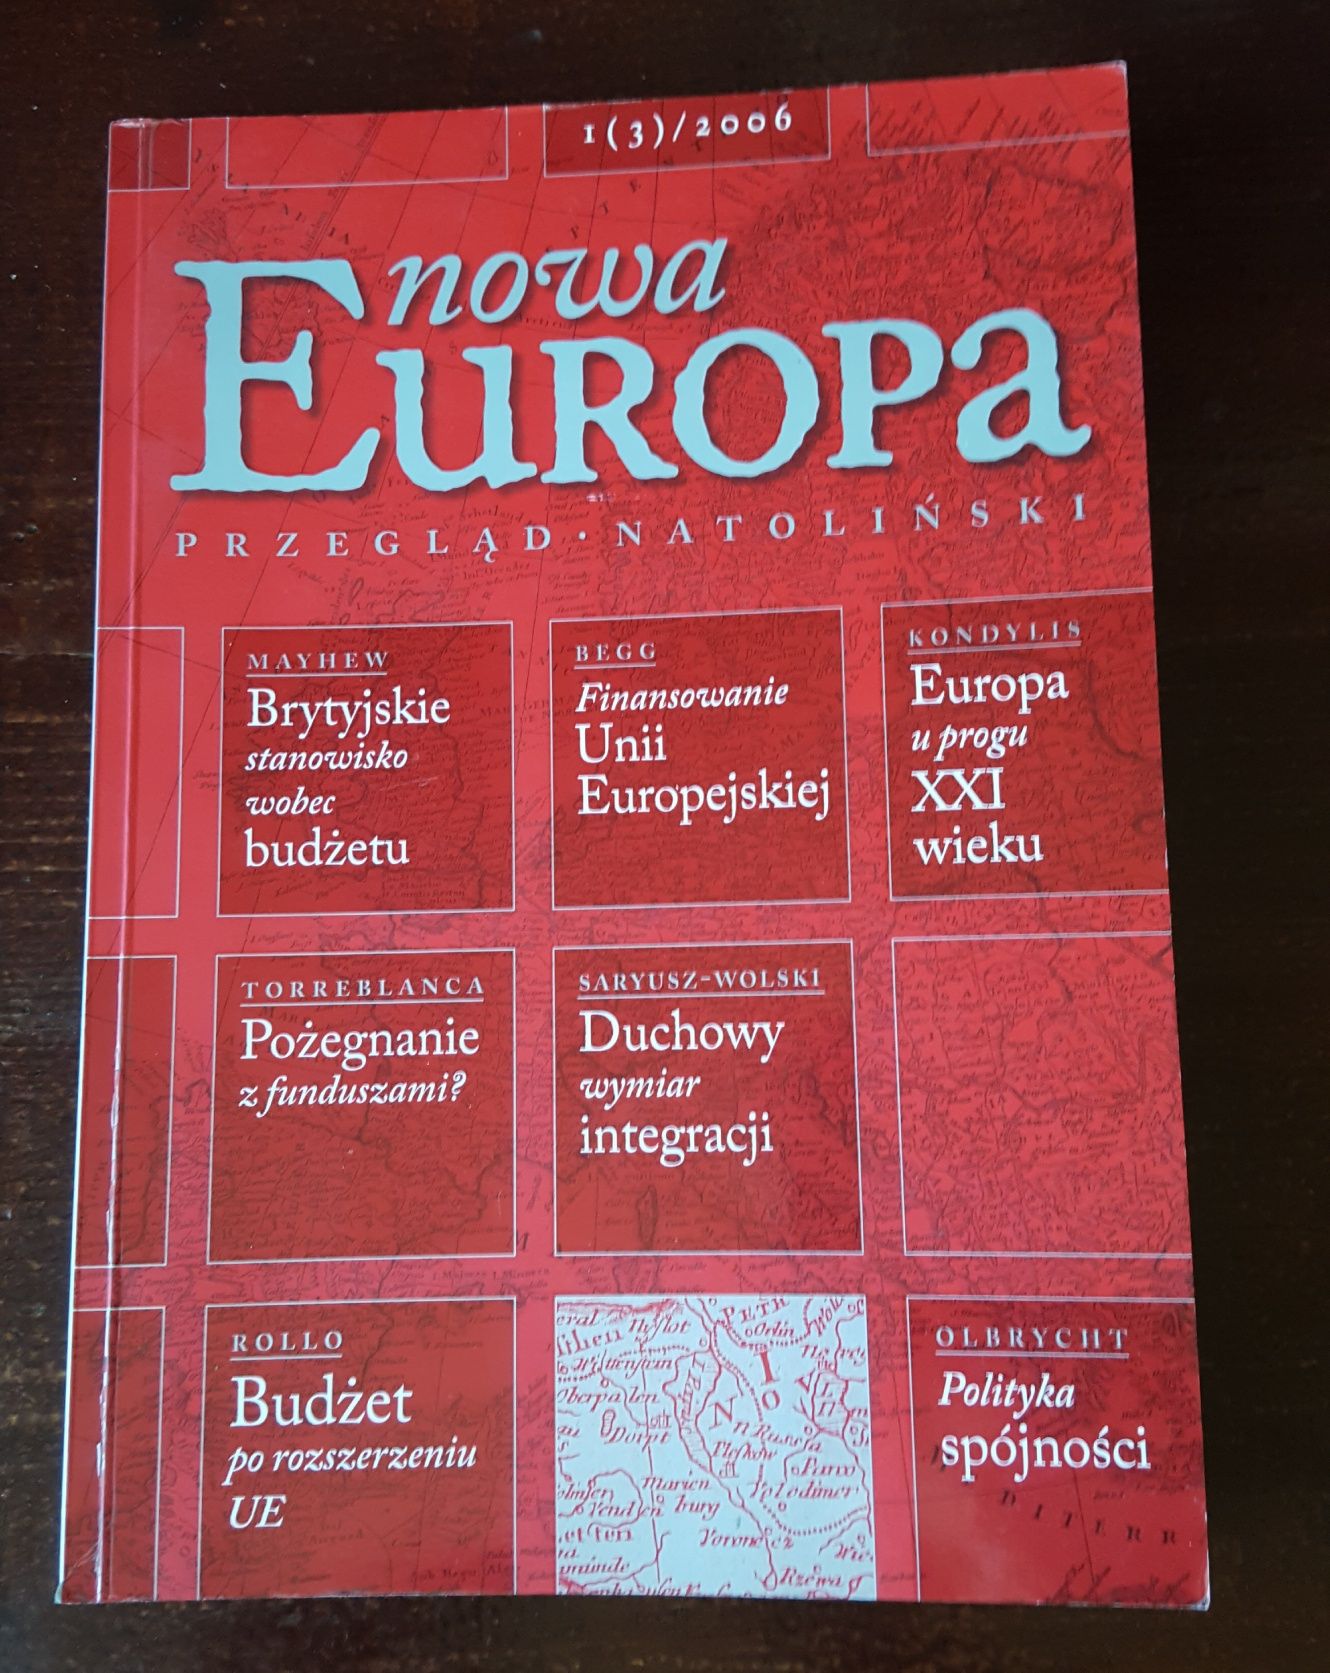 Nowa Europa. Przegląd natoliński 1(3)/2006